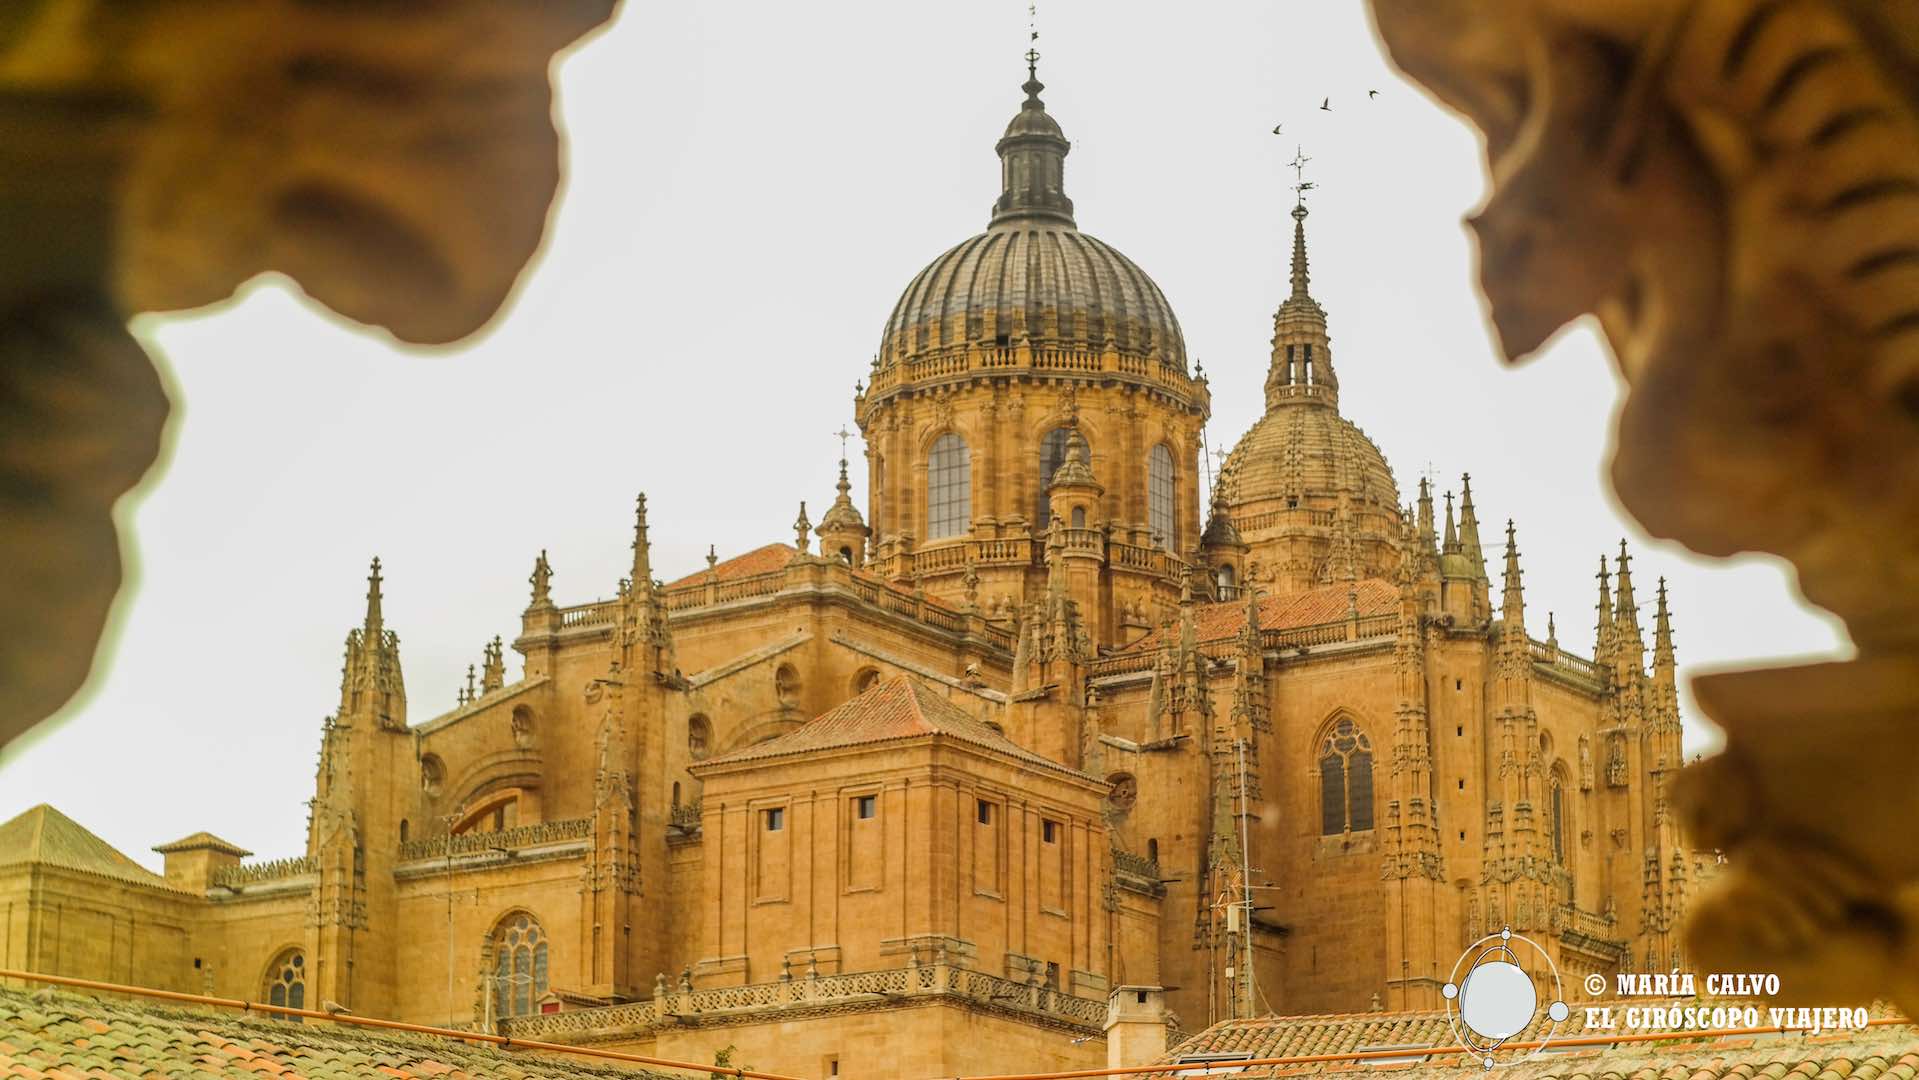 Ecos del tiempo en la Salamanca monumental